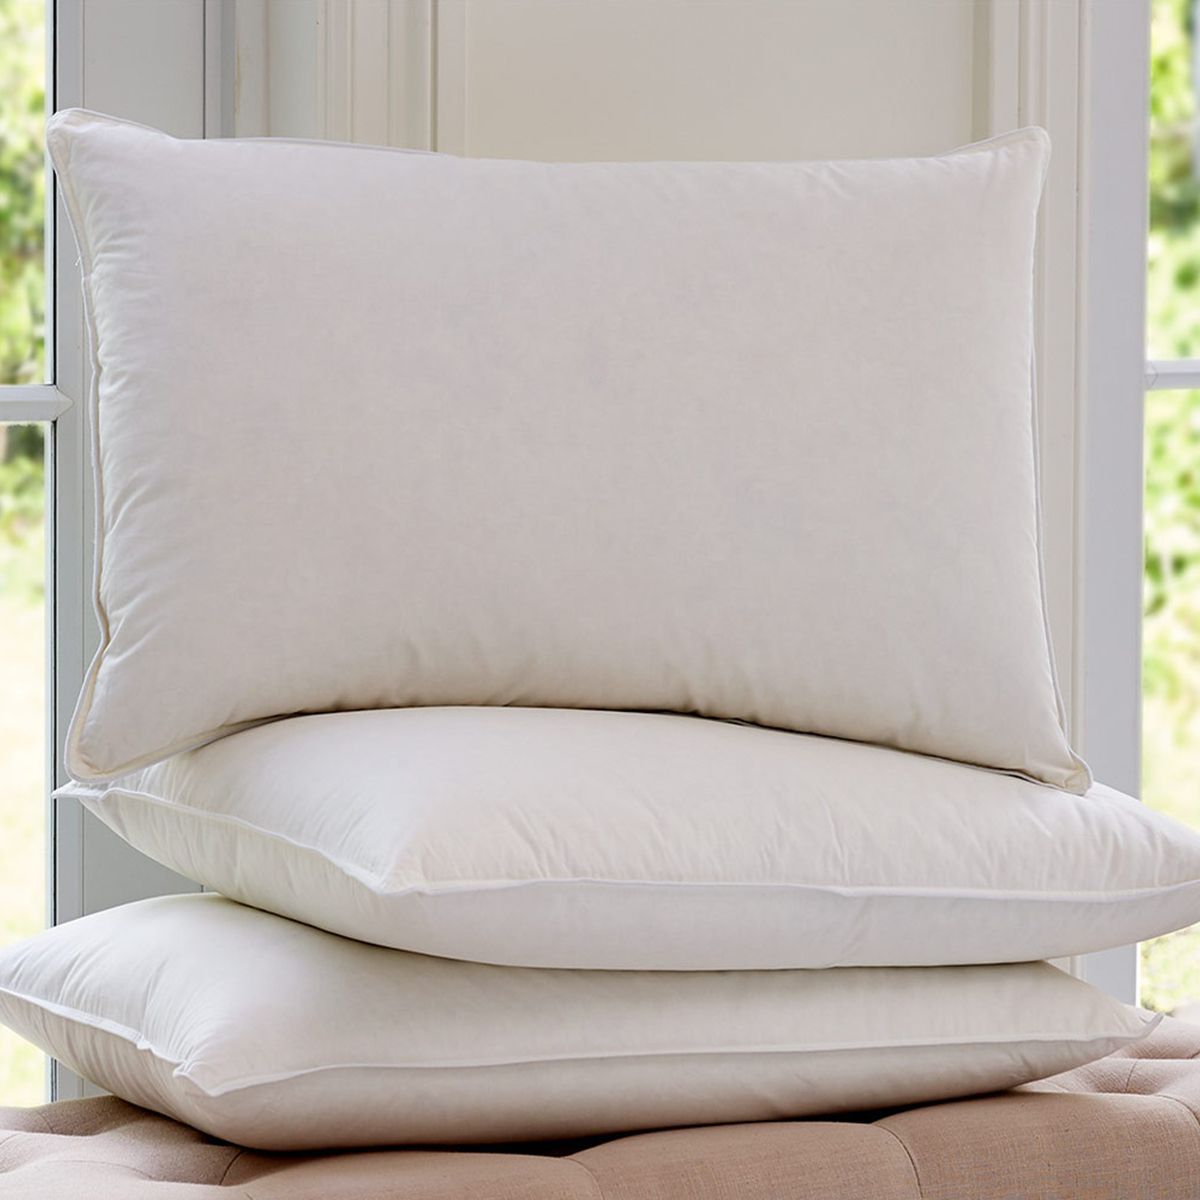 Μαξιλάρι ύπνου μαλακό Smart bed&home